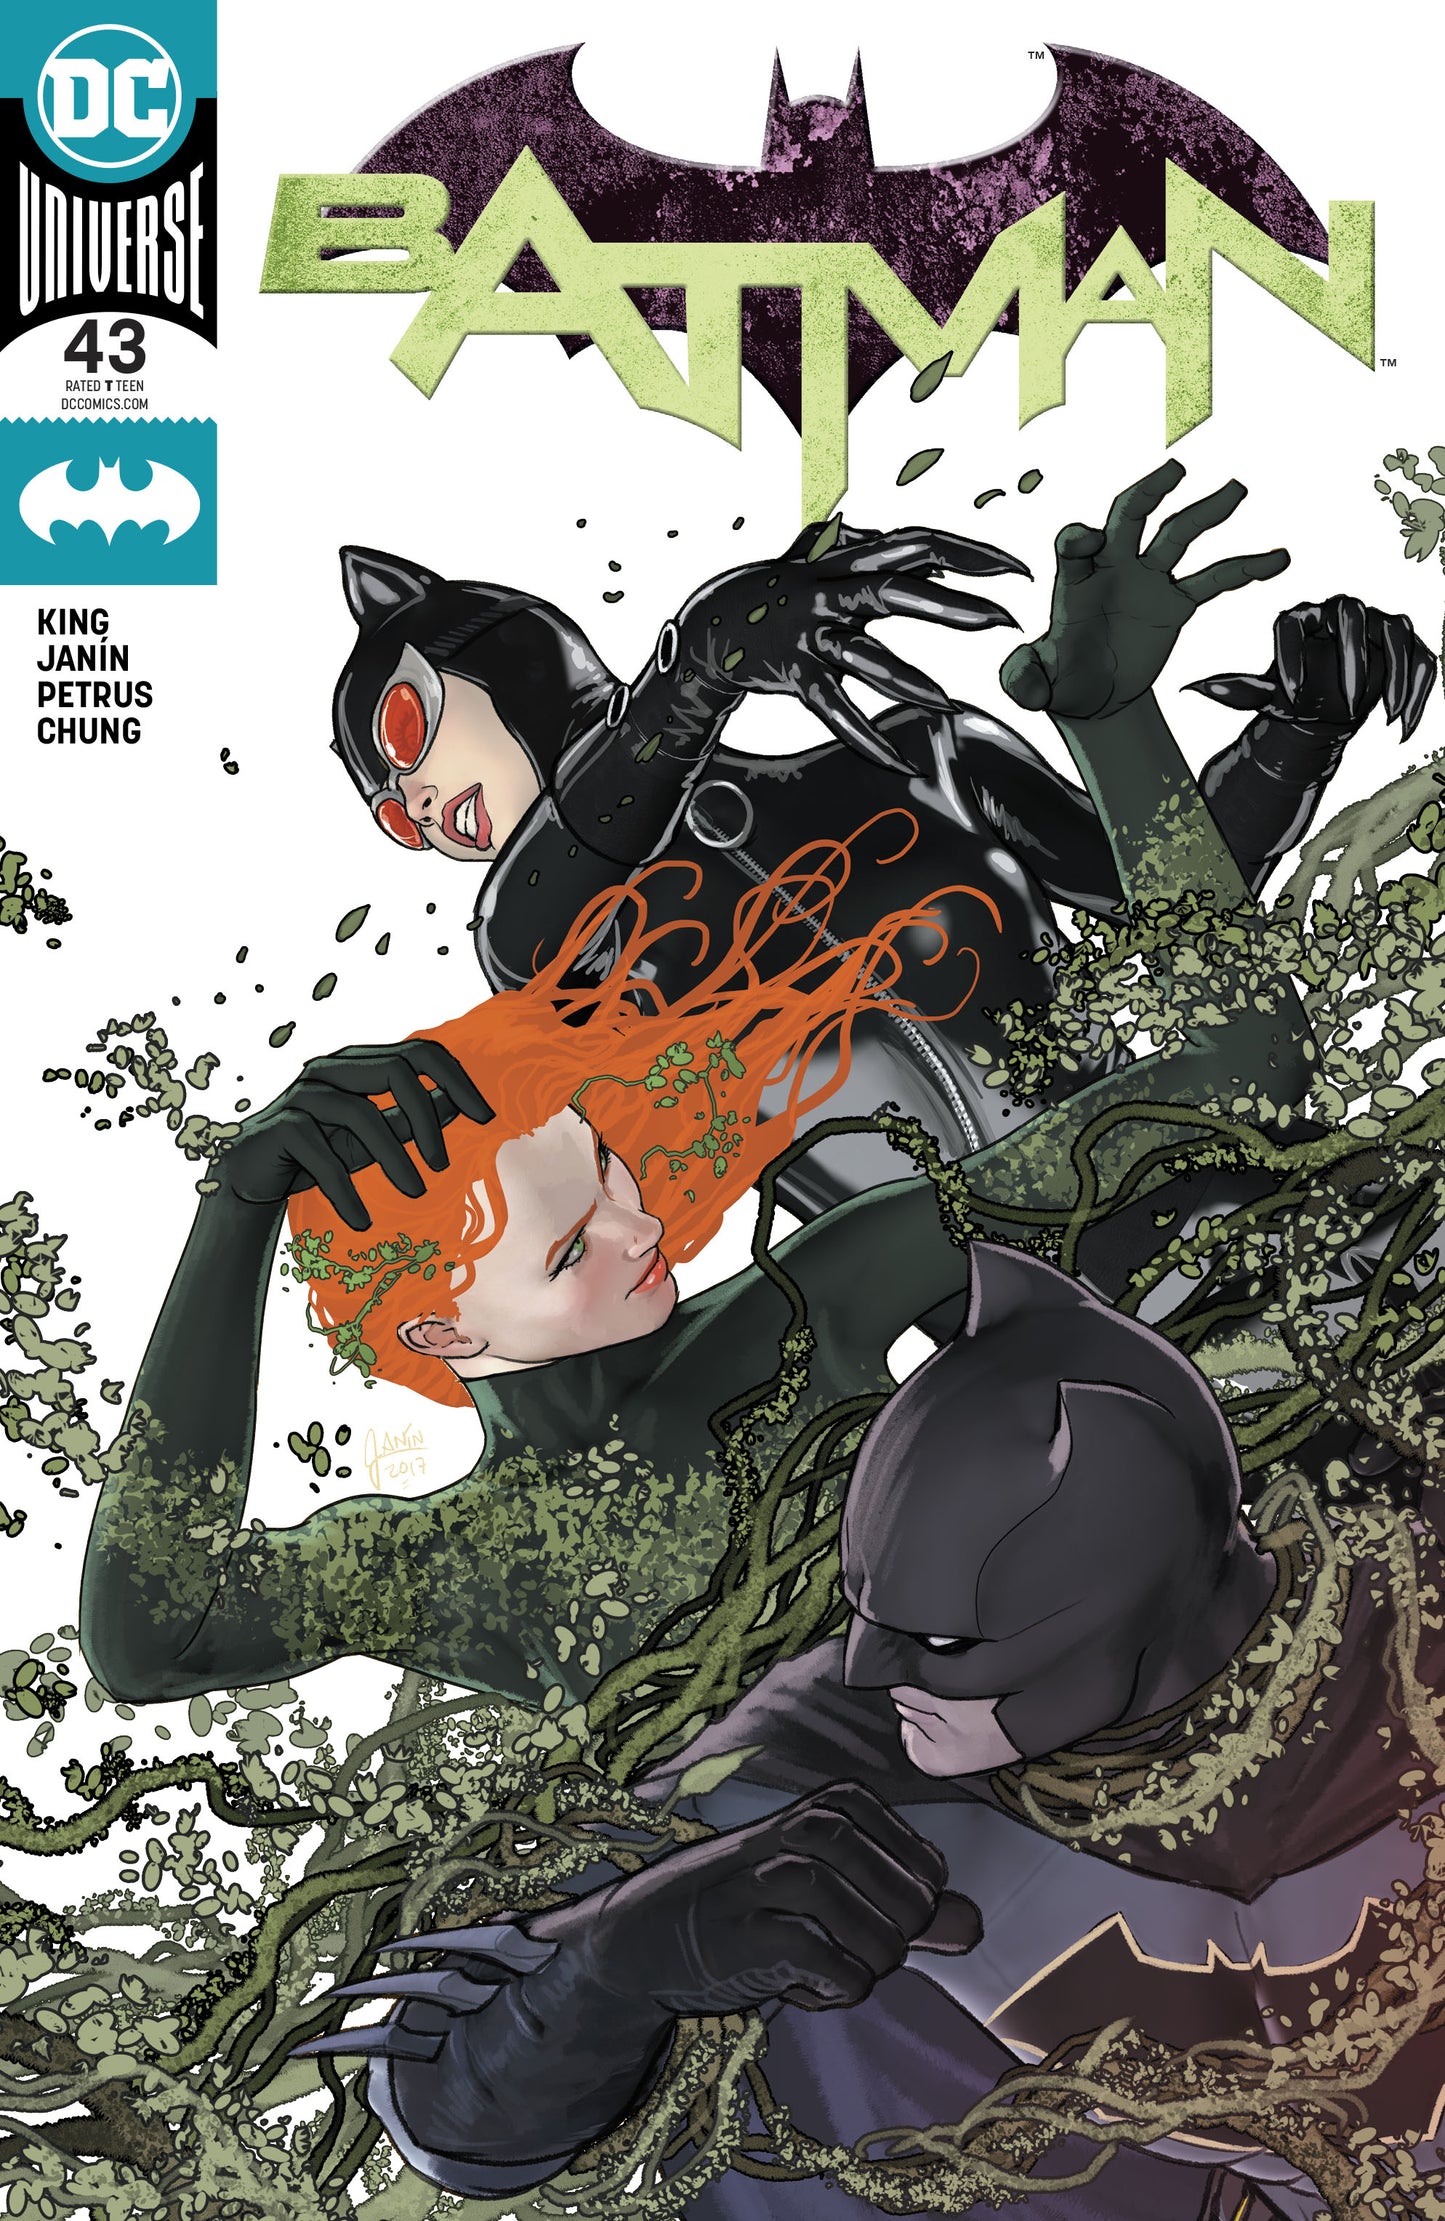 BATMAN #43 COVER